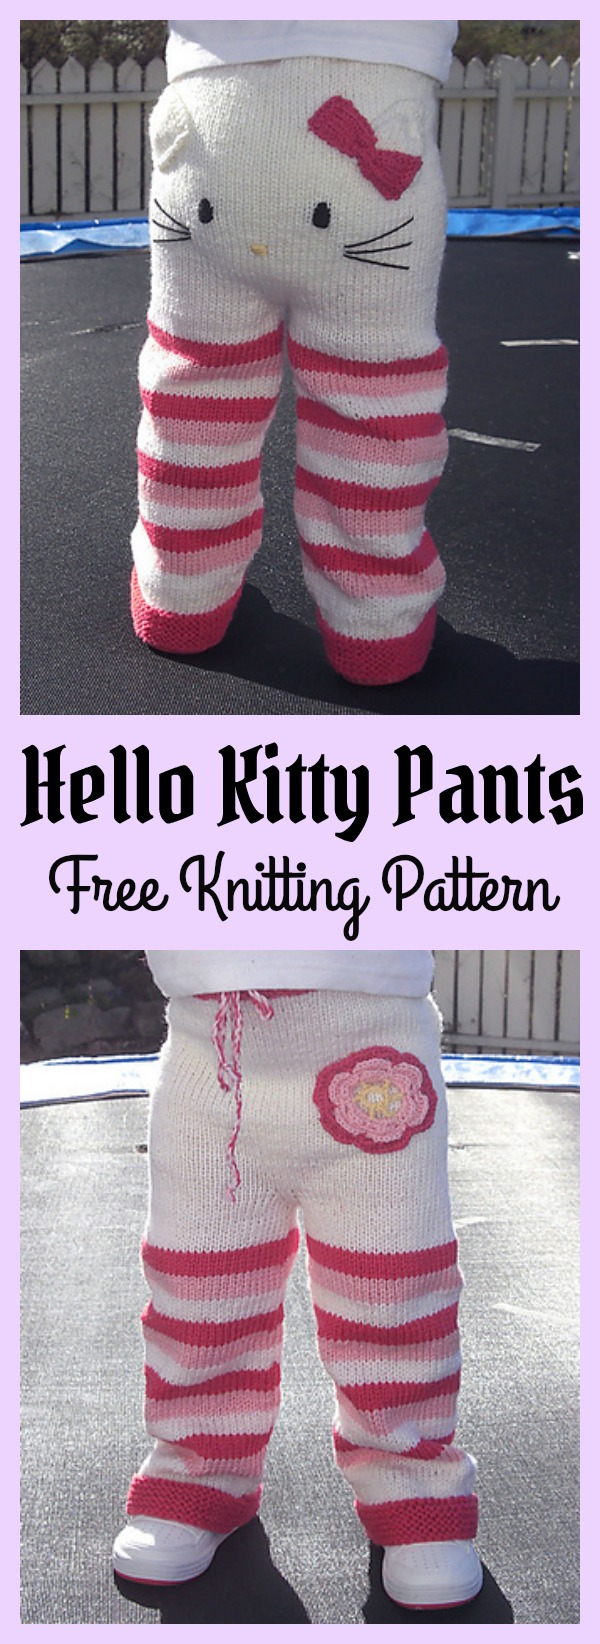 Hello Kitty Pants Free Knitting Pattern m